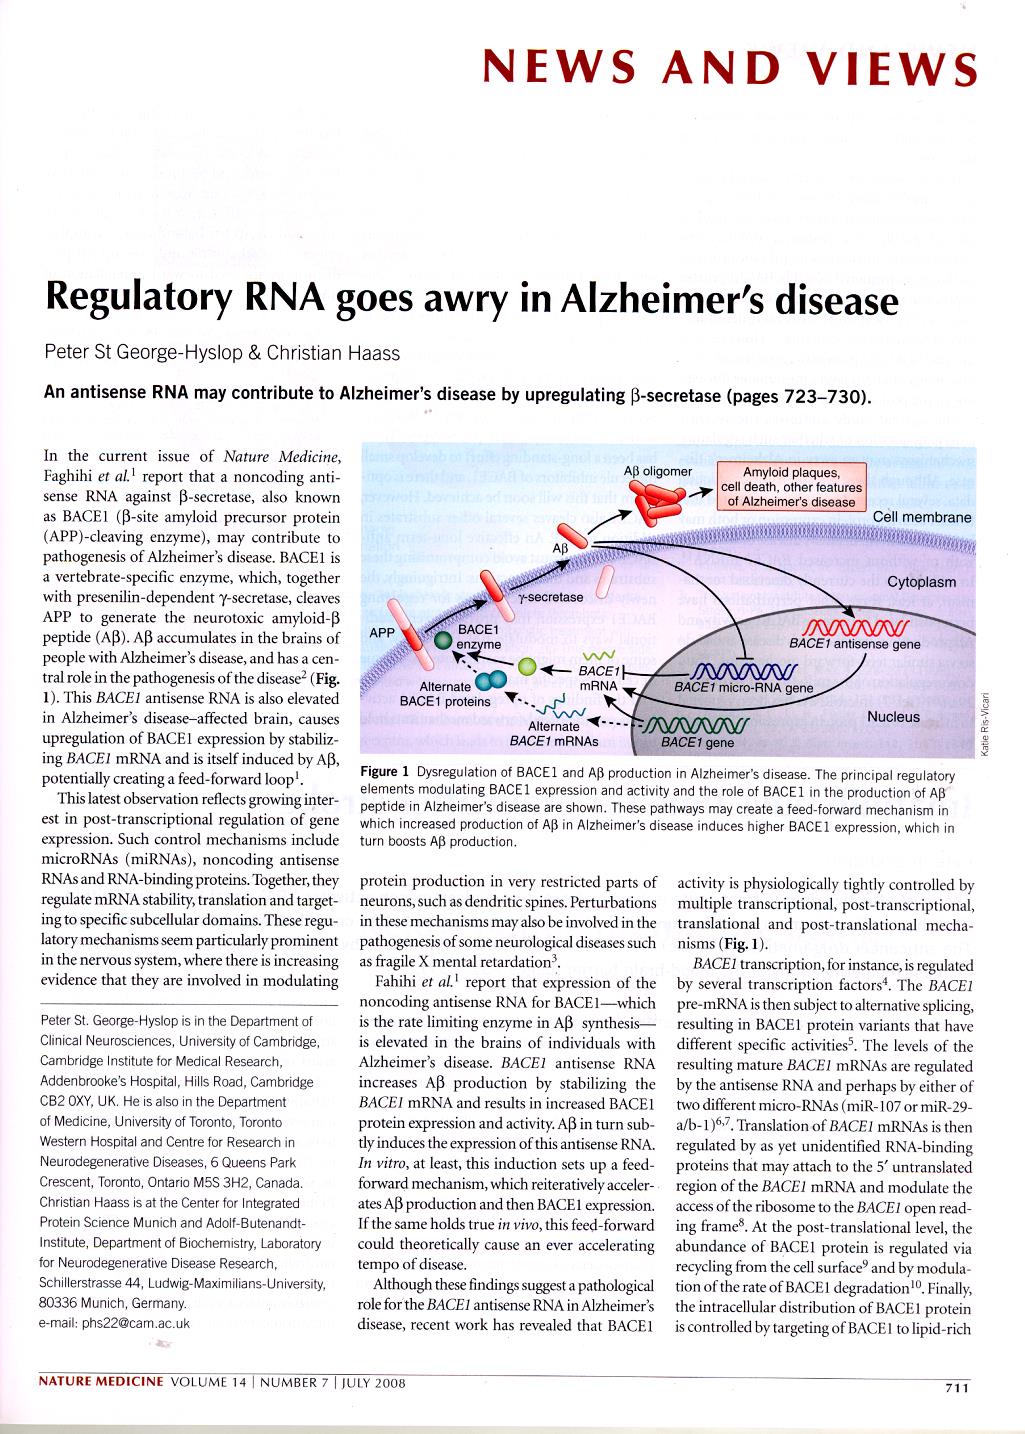 Regulering på RNA-nivå